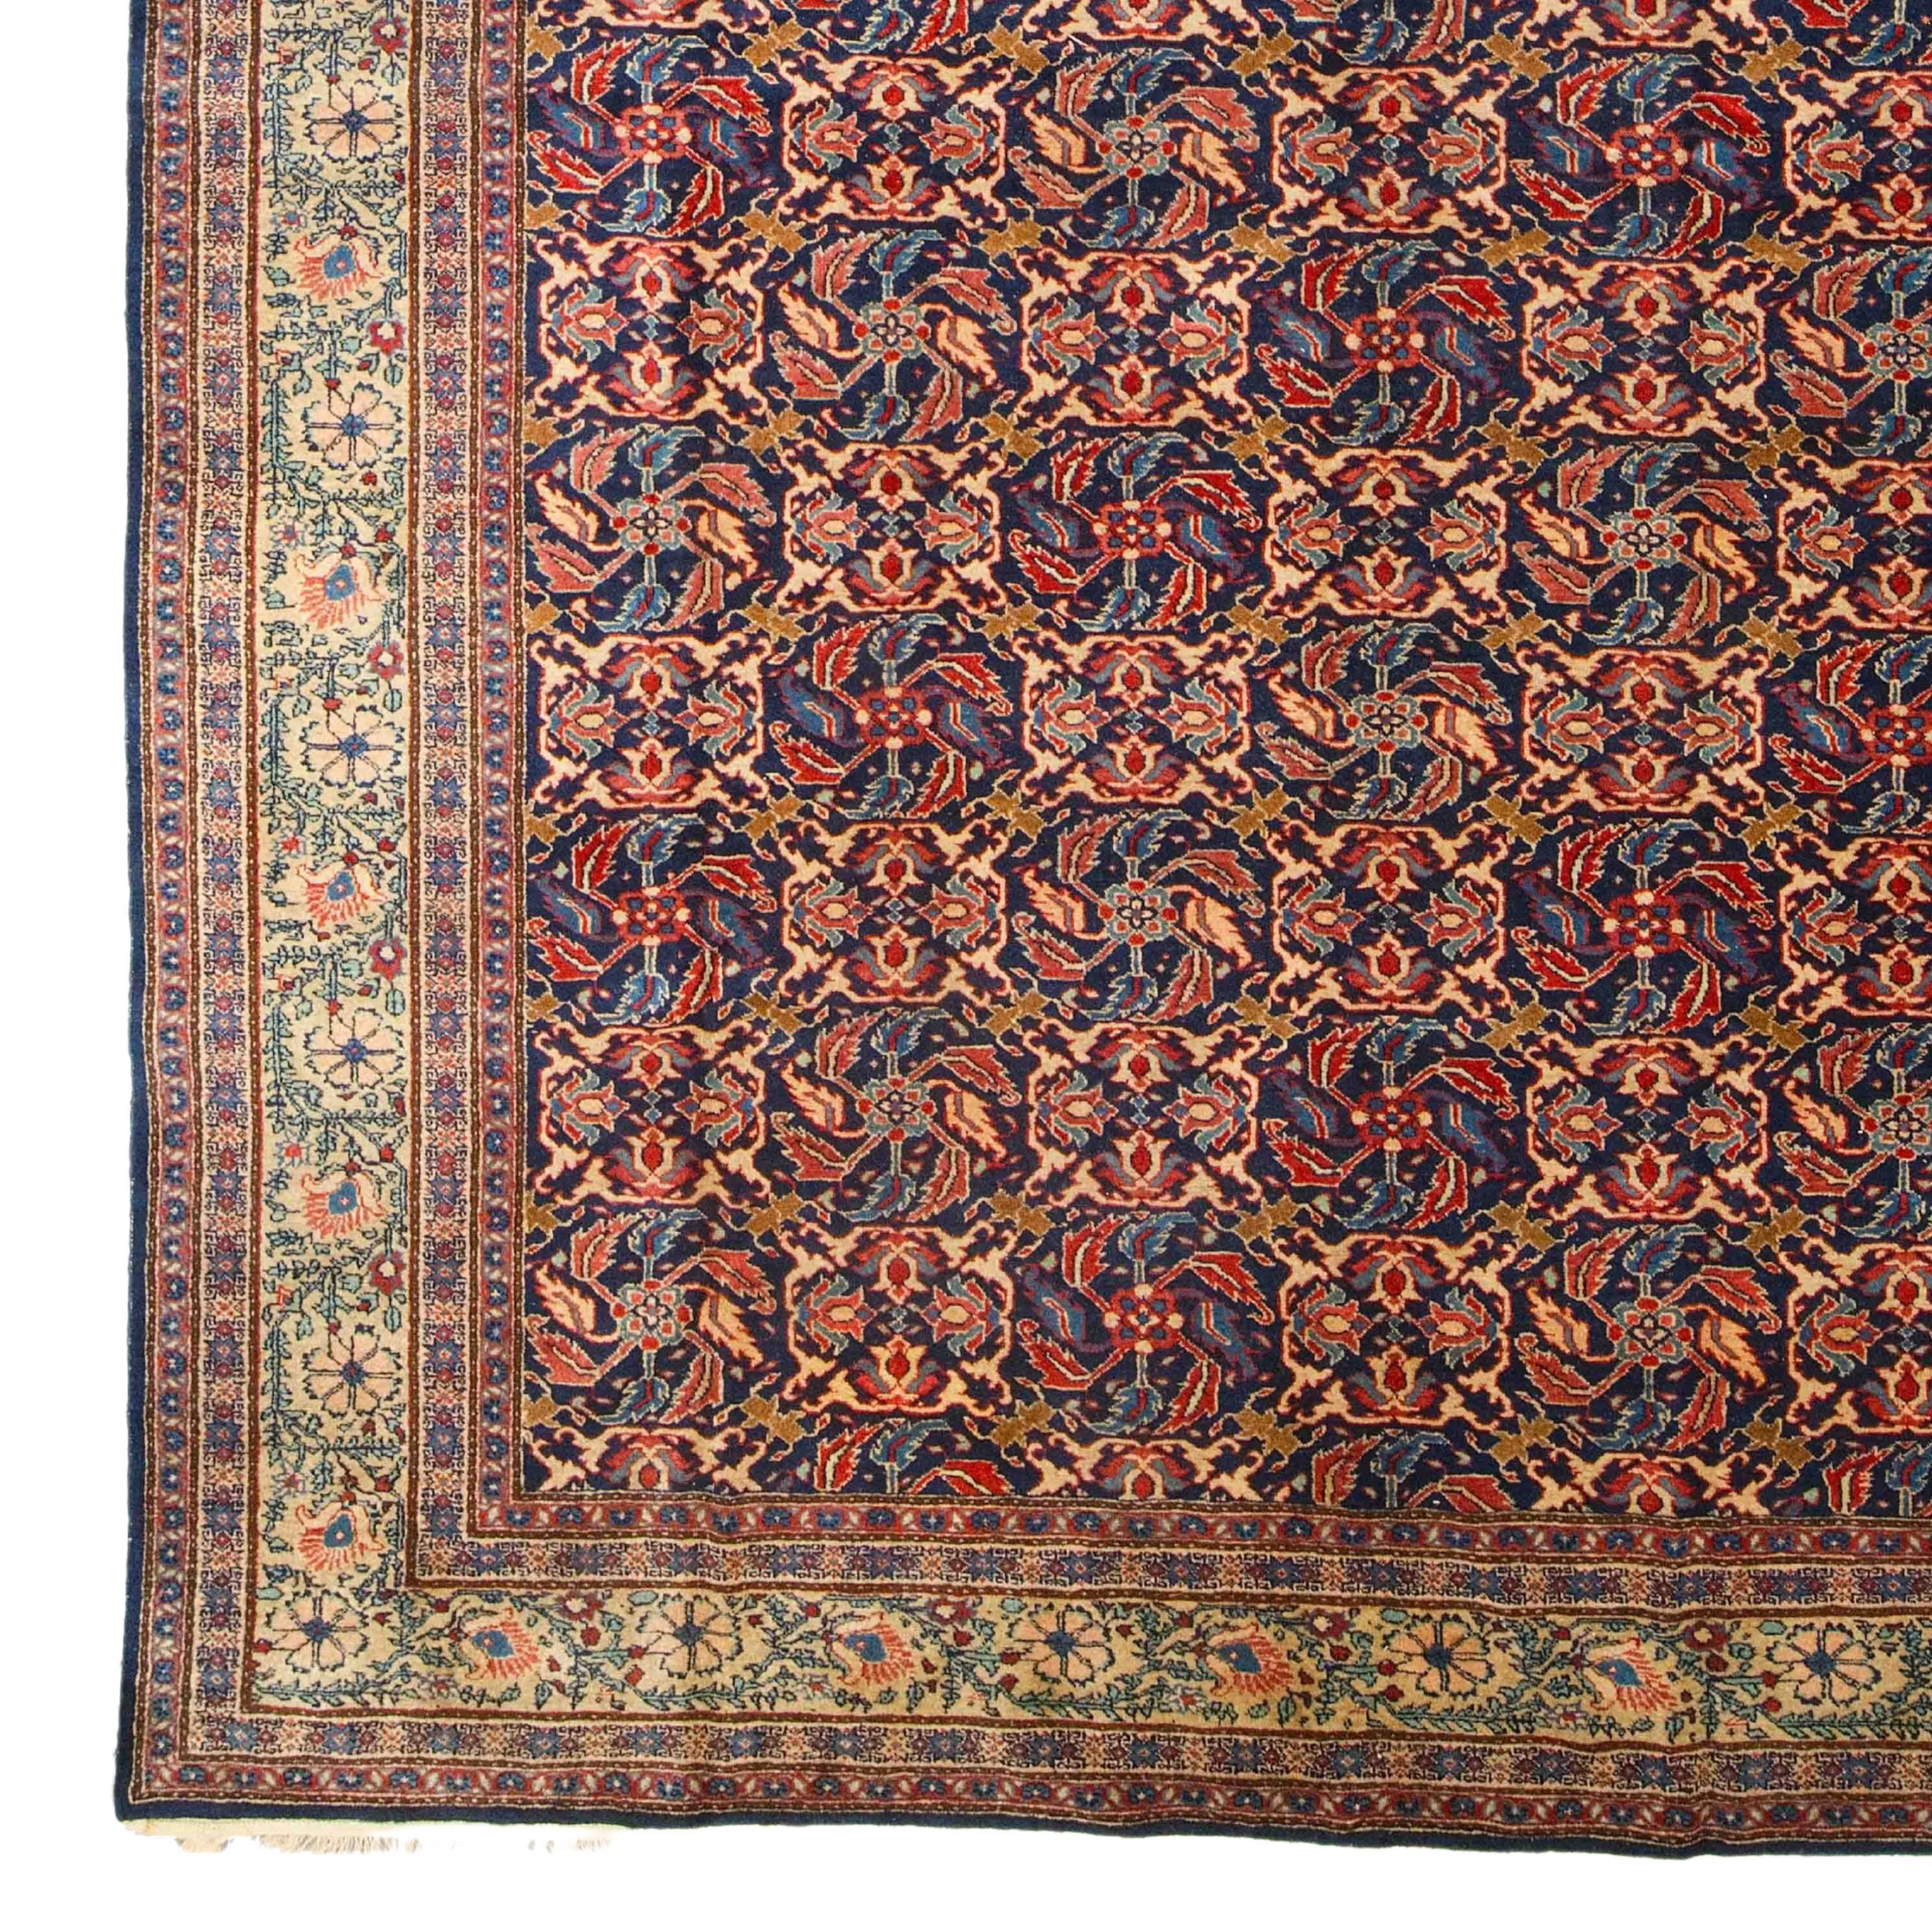 Tapis ancien de Ferahan - Fin du 19ème siècle Tapis de Ferahan en bon état 260 x 344cm (8,53 x 11,28 ft)

Les tapis Ferahan sont généralement fabriqués avec un nœud asymétrique sur une base en coton. Leurs motifs, leurs couleurs et leurs dimensions